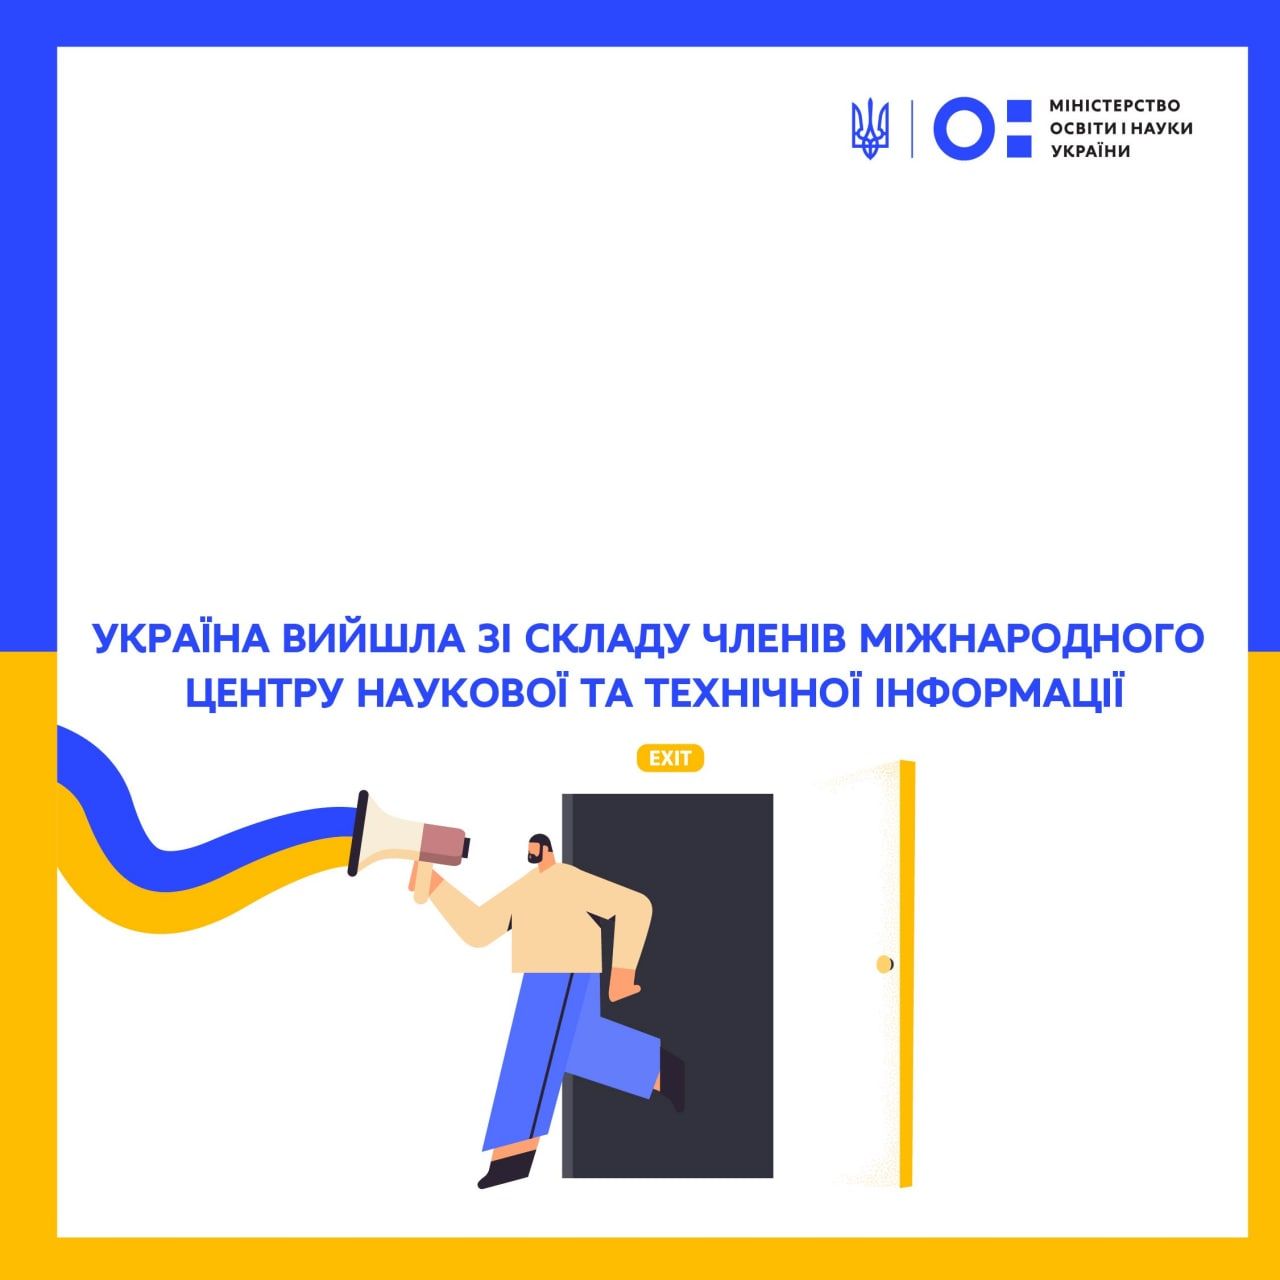 Україна вийшла зі складу членів Міжнародного центру наукової та технічної інформації